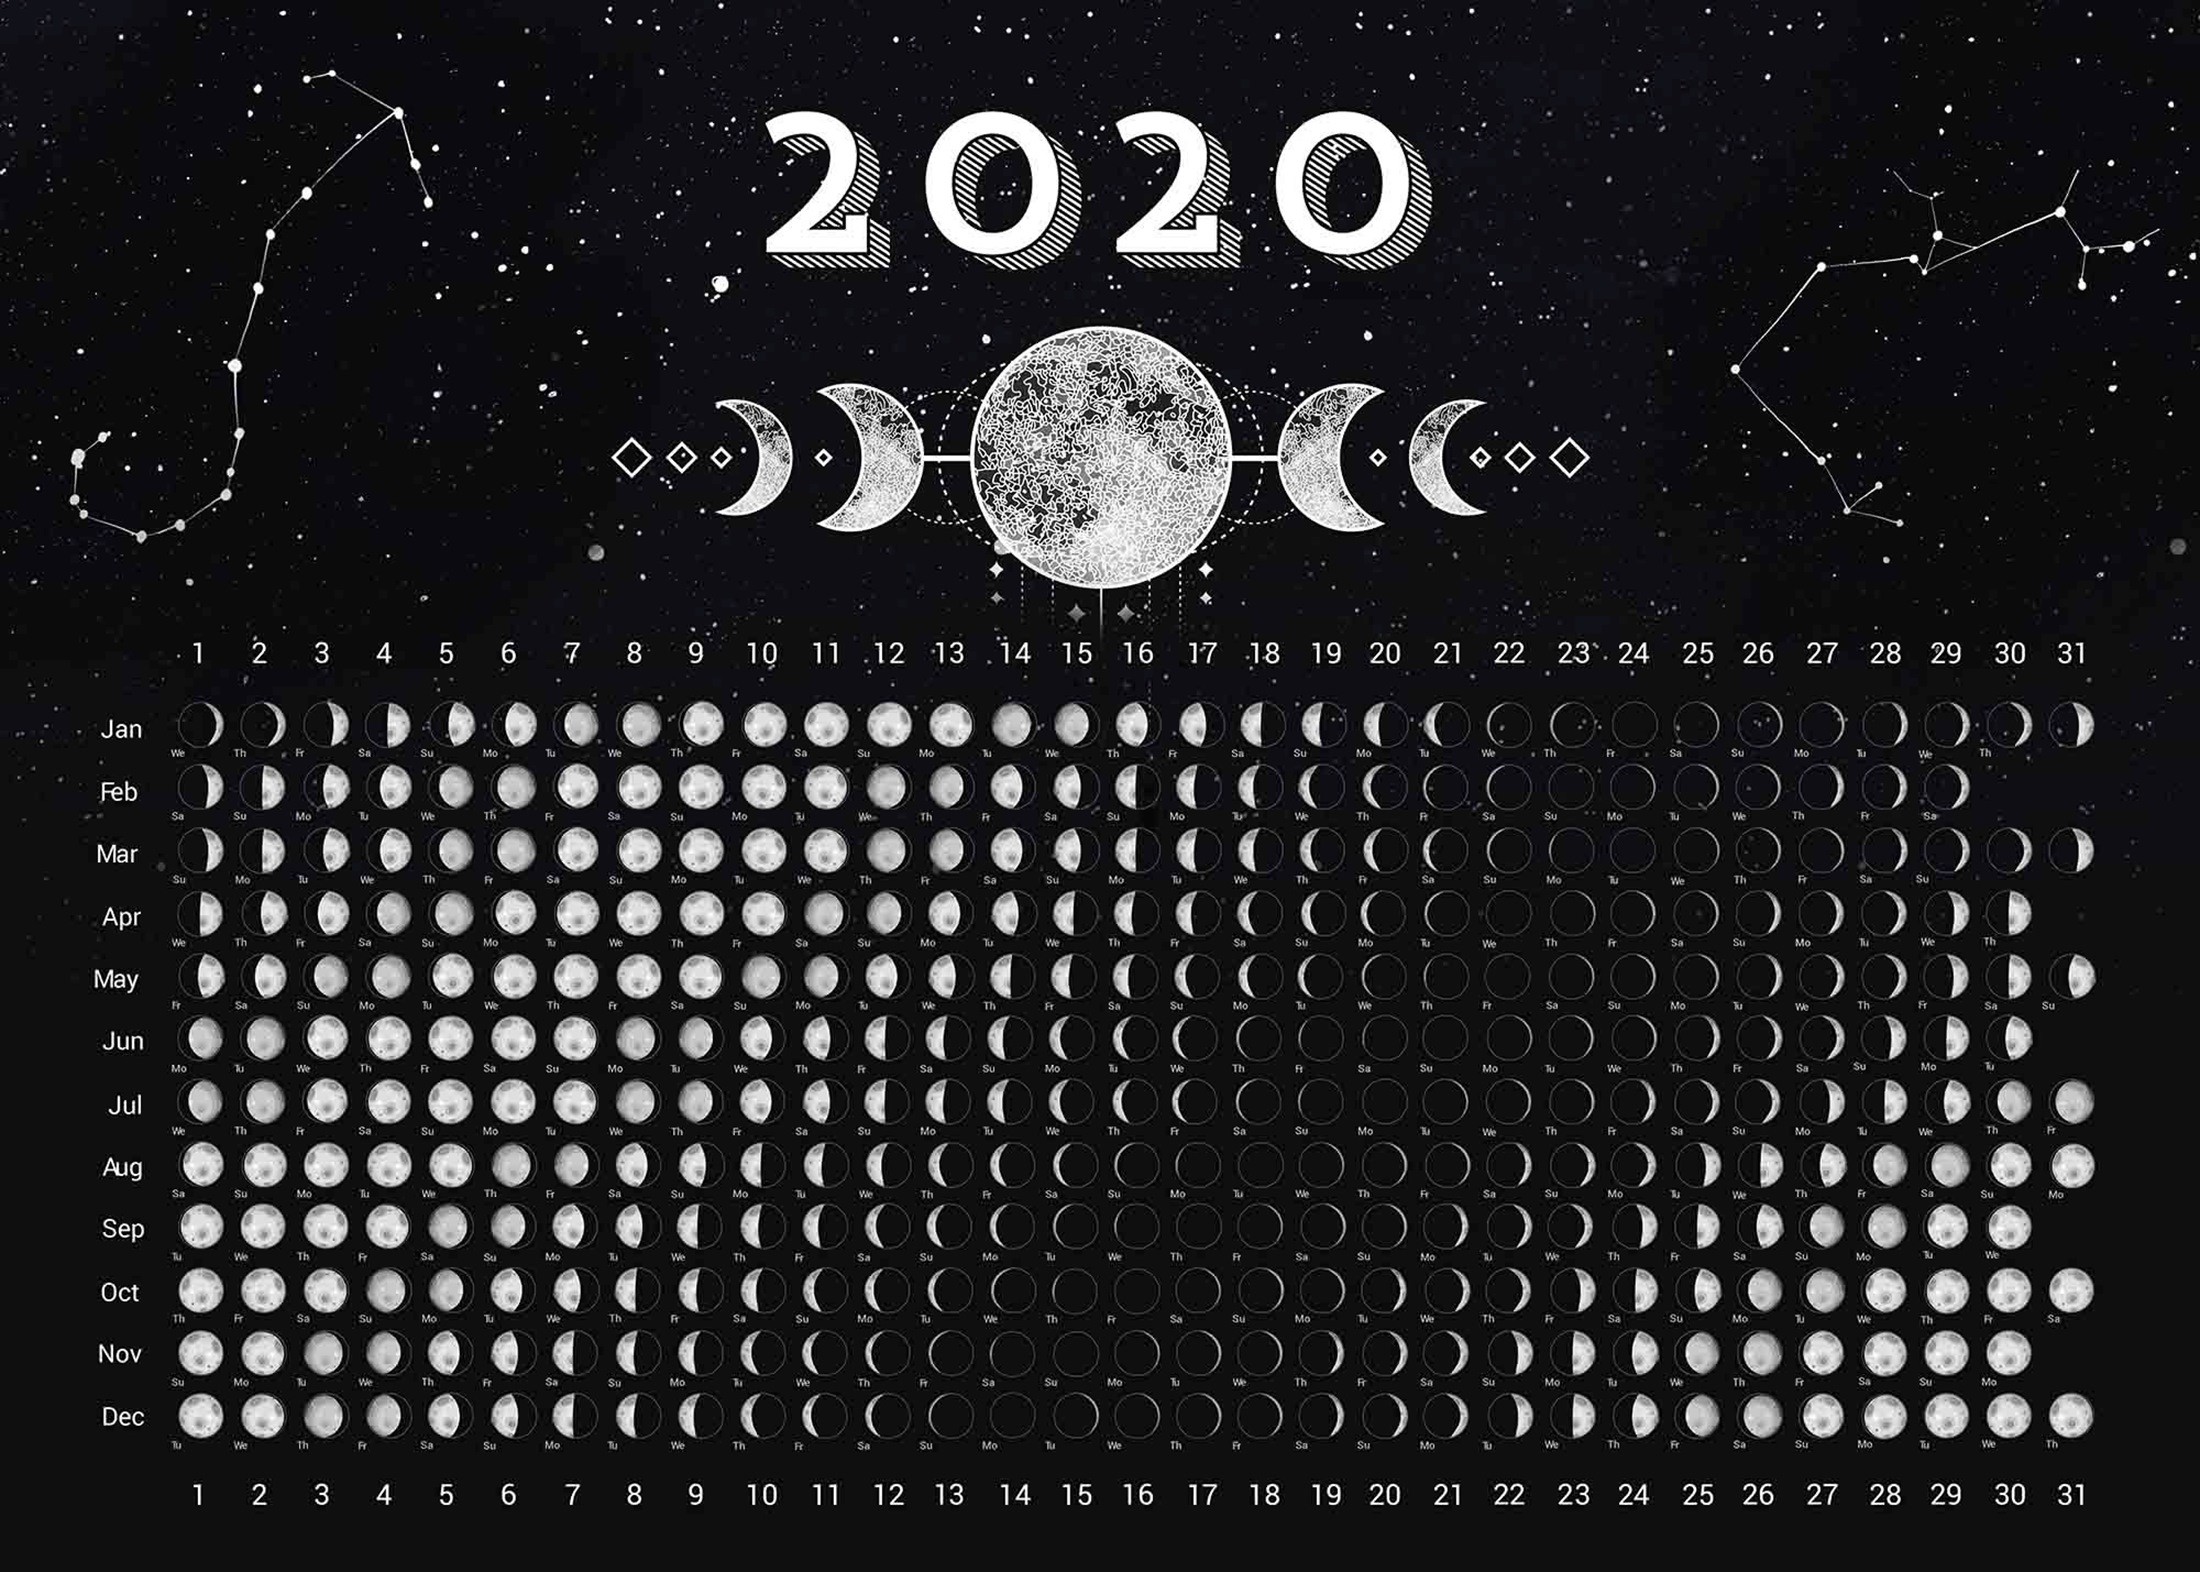 Фазы Луны на 2020 год